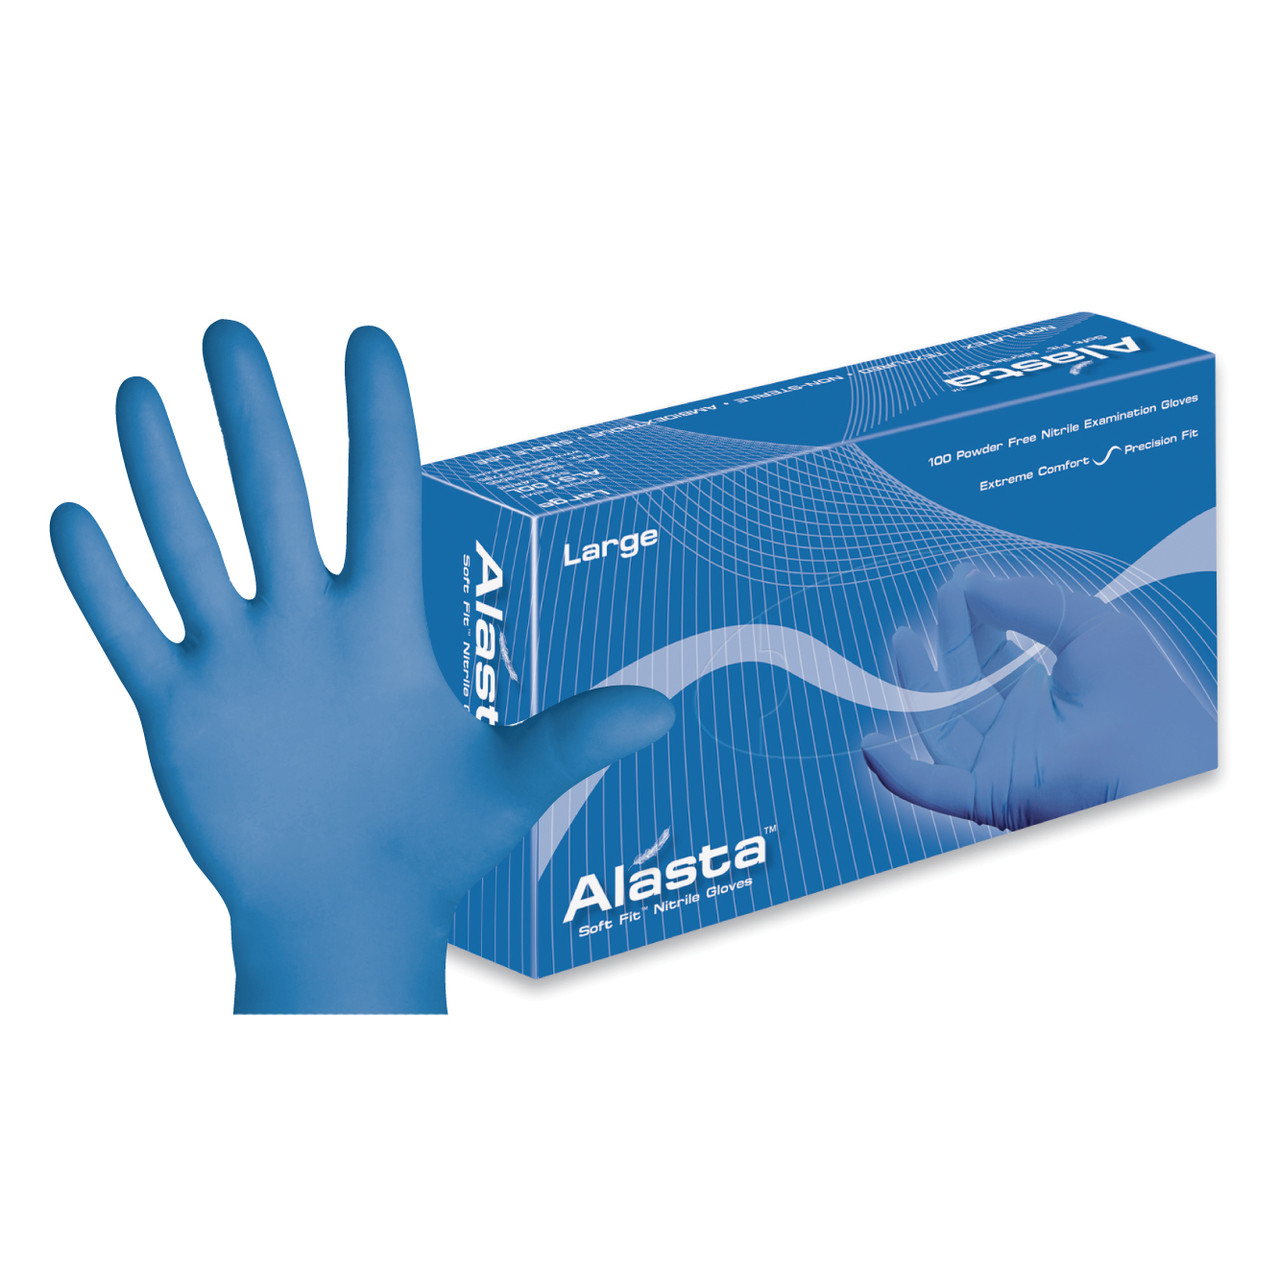 Dash Medical - Alasta Powder Free Nitrile Glove - X-Large (200)